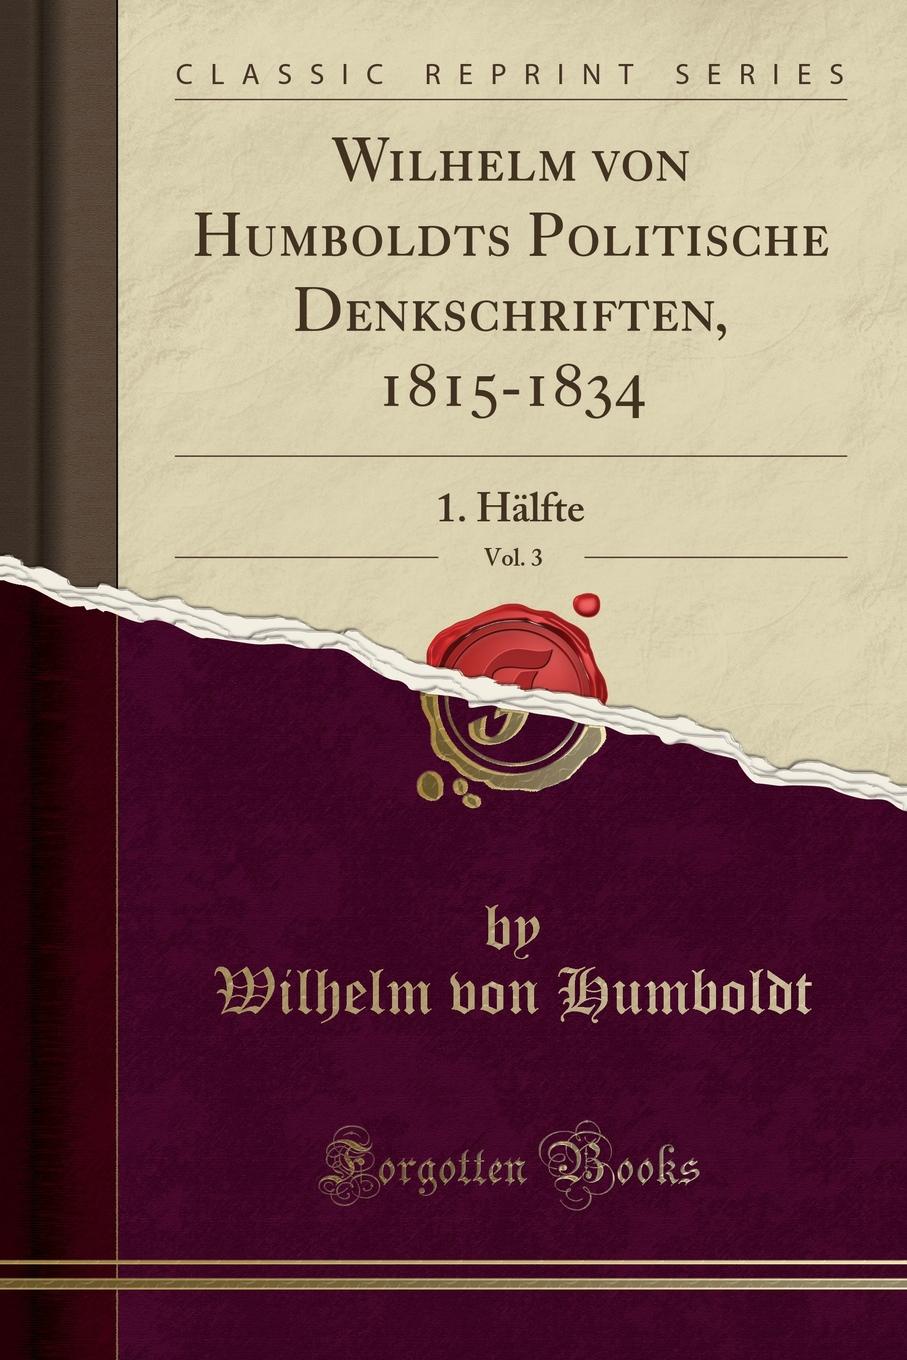 фото Wilhelm von Humboldts Politische Denkschriften, 1815-1834, Vol. 3. 1. Halfte (Classic Reprint)